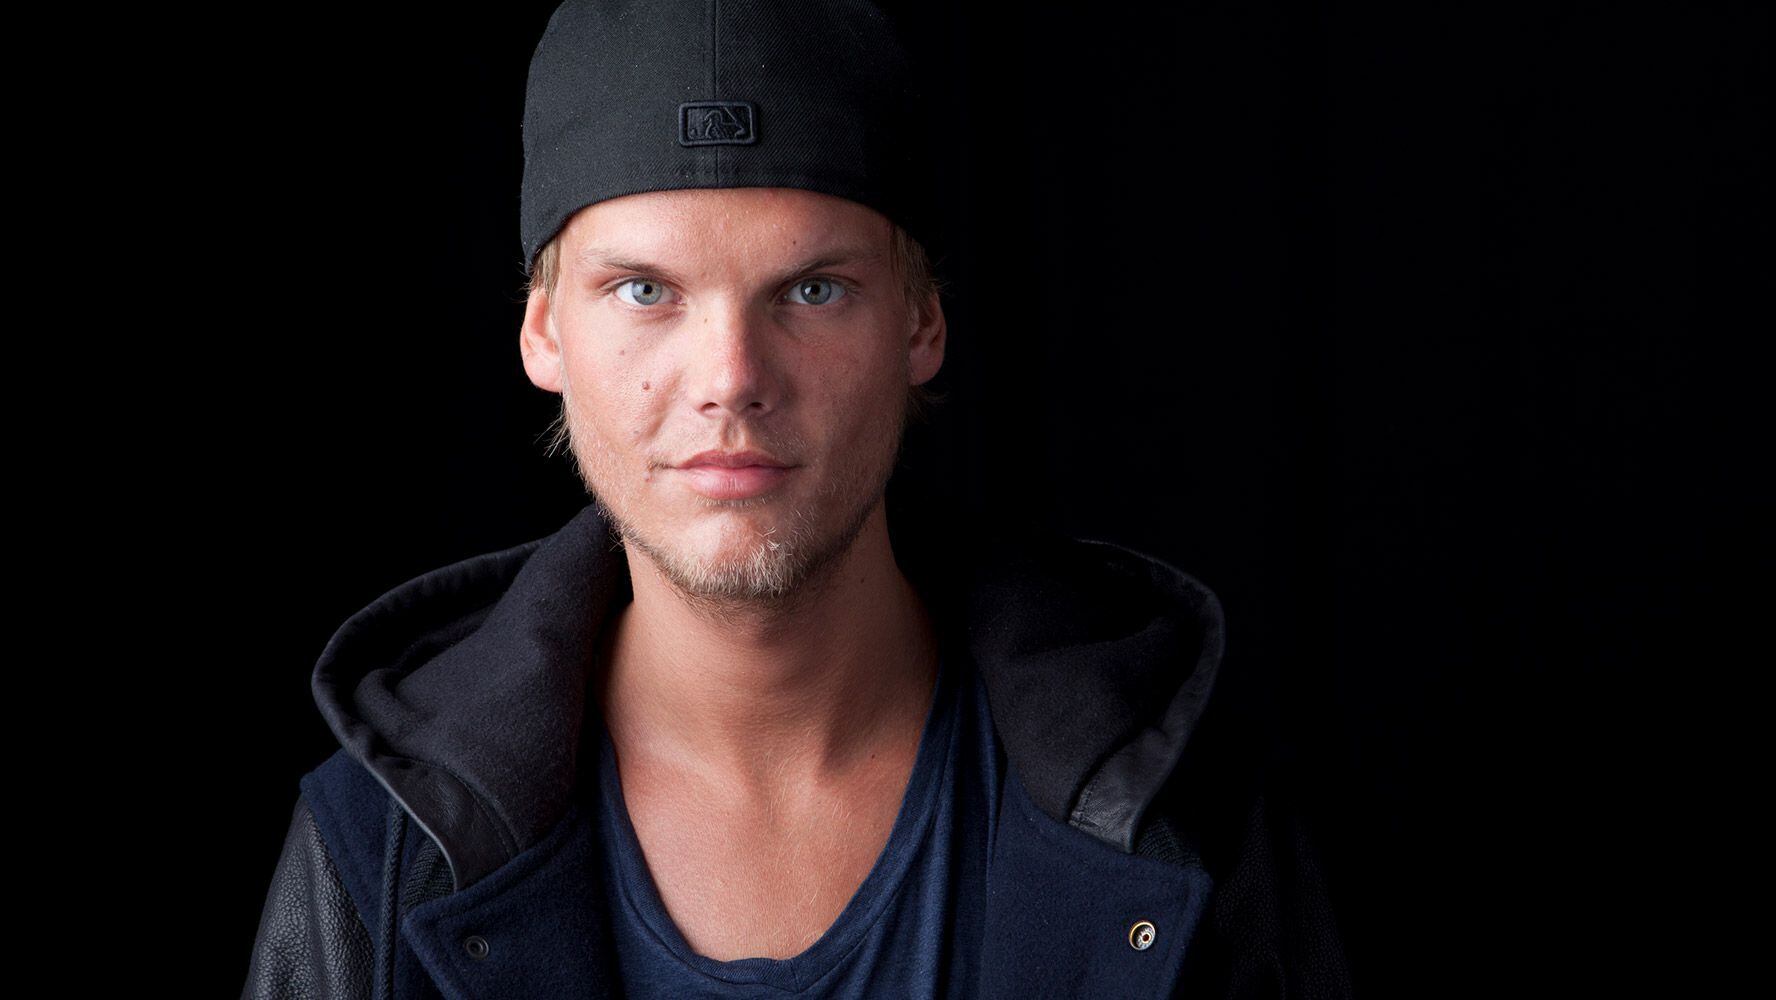 El DJ sueco Avicii murió tras cometer suicidio, según las versiones oficiales. (Foto: AP)